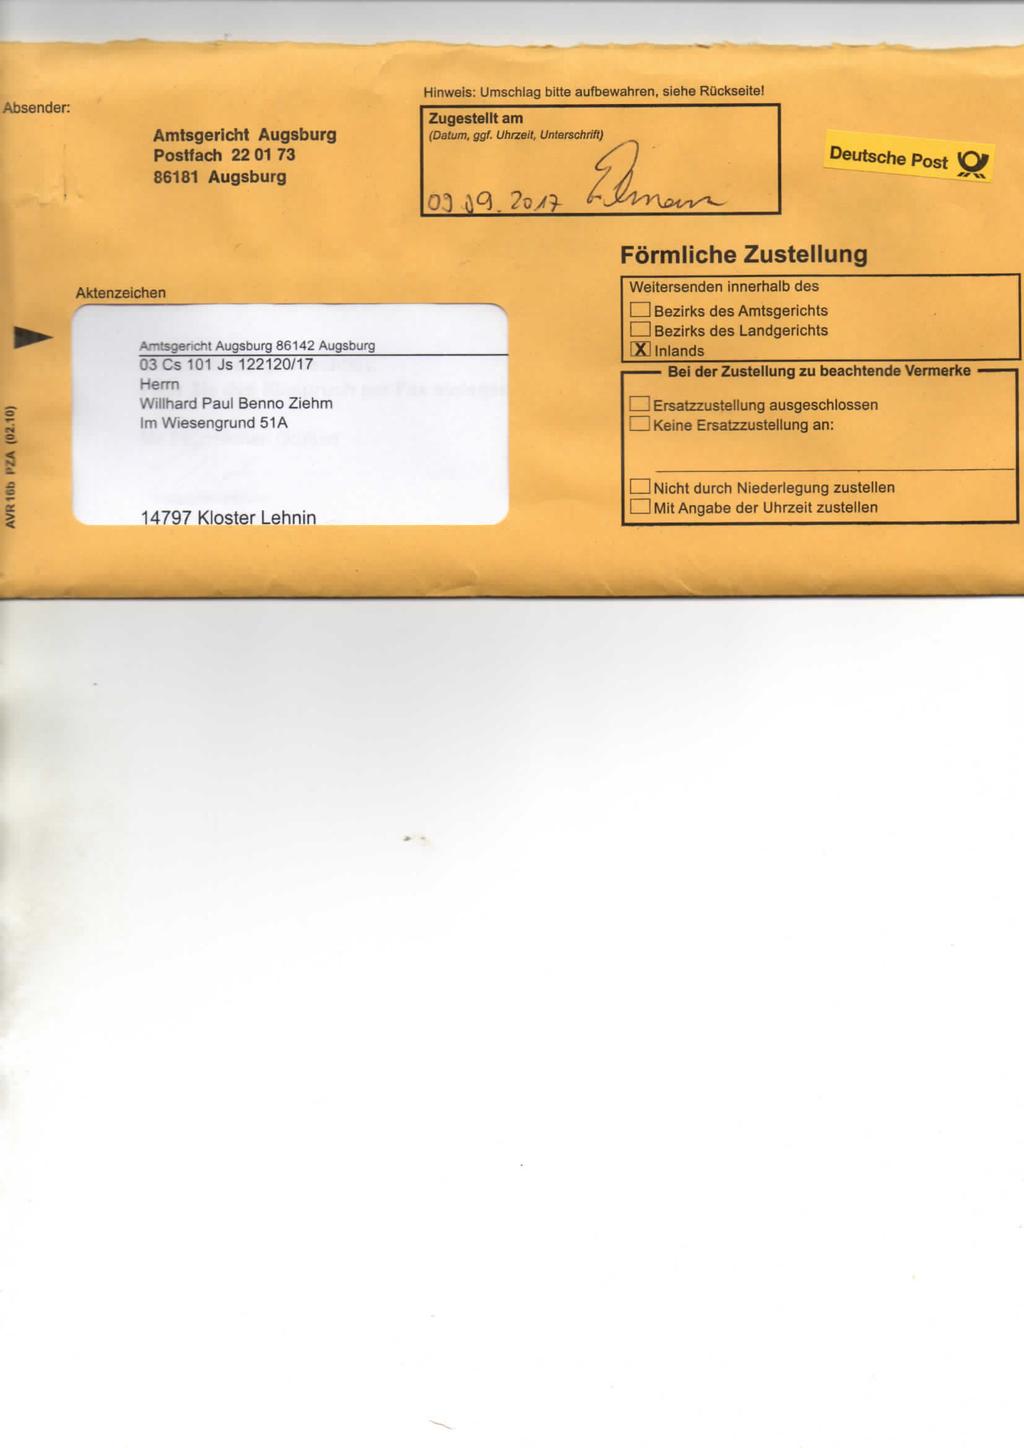 Absender: Amtsgericht Augsburg Postfach 22 01 73 86181 Augsburg Hinweis: Umschlag bitte aufbewahren, siehe Rückseite! Zugestellt am (Datum, ggf.